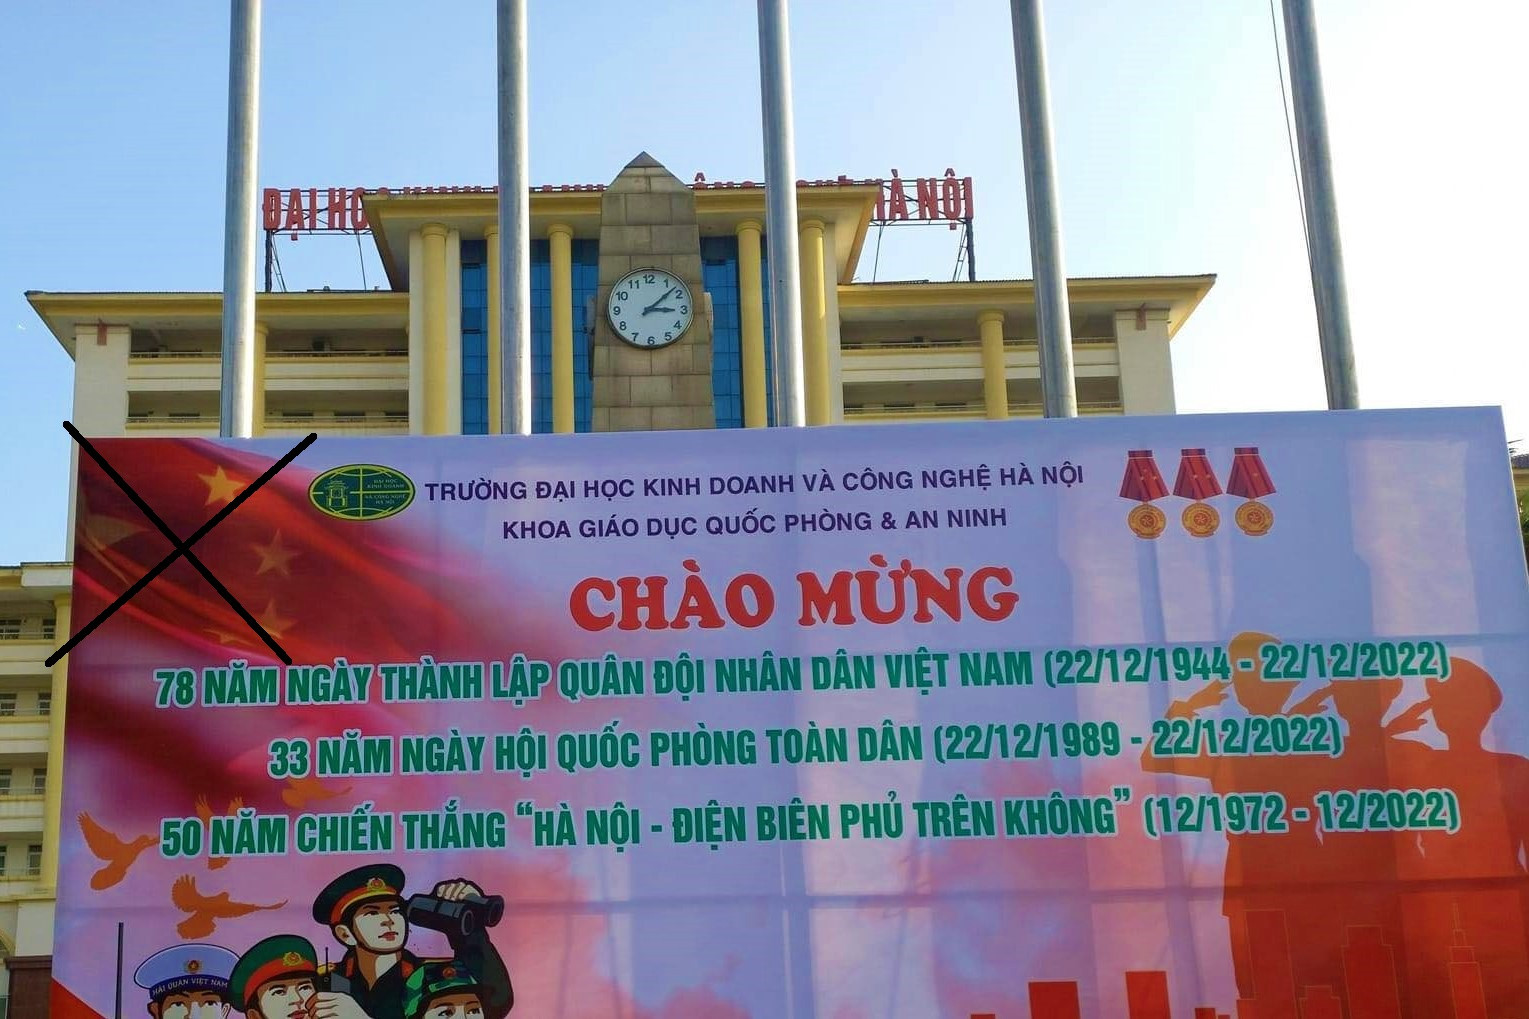 Cờ Việt-Trung: Năm 2024 đánh dấu mốc son đối với quan hệ giữa hai nước Việt - Trung. Cờ Việt-Trung trở thành biểu tượng thu hút sự quan tâm của cả hai dân tộc. Hình ảnh này chứa đựng trong mình tình cảm hữu nghị đôi bên và sự đón nhận của nhân dân Việt Nam đối với dân tộc hàng tỉ người của Trung Quốc.